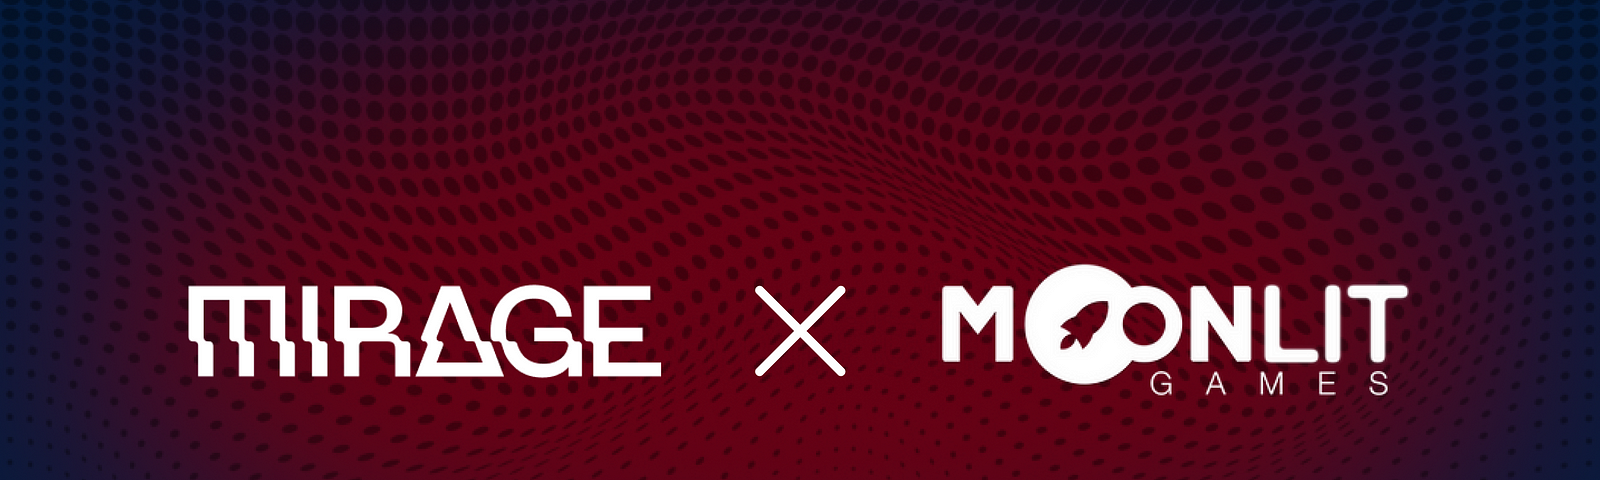 Mirage and Moonlit Games logos